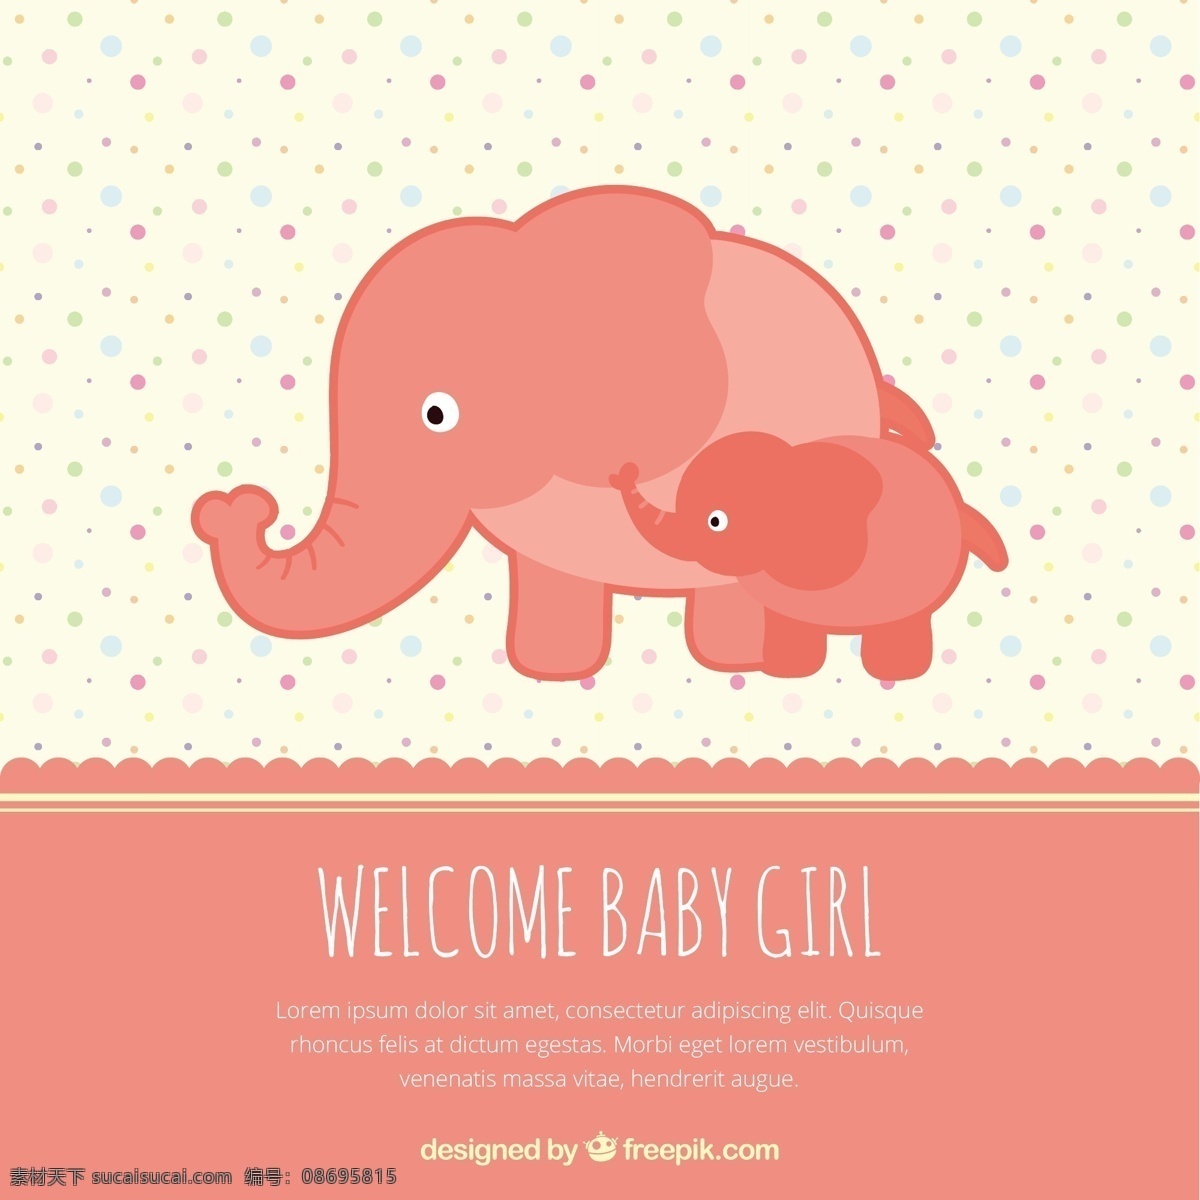 欢迎宝贝女卡 宝贝 聚会 邀请 卡片 婴儿淋浴 模板 红色 大象 孩子 庆祝 新的 欢迎 邀请卡 婴儿女孩 公告 淋浴 派对邀请 婴儿卡 出生 白色